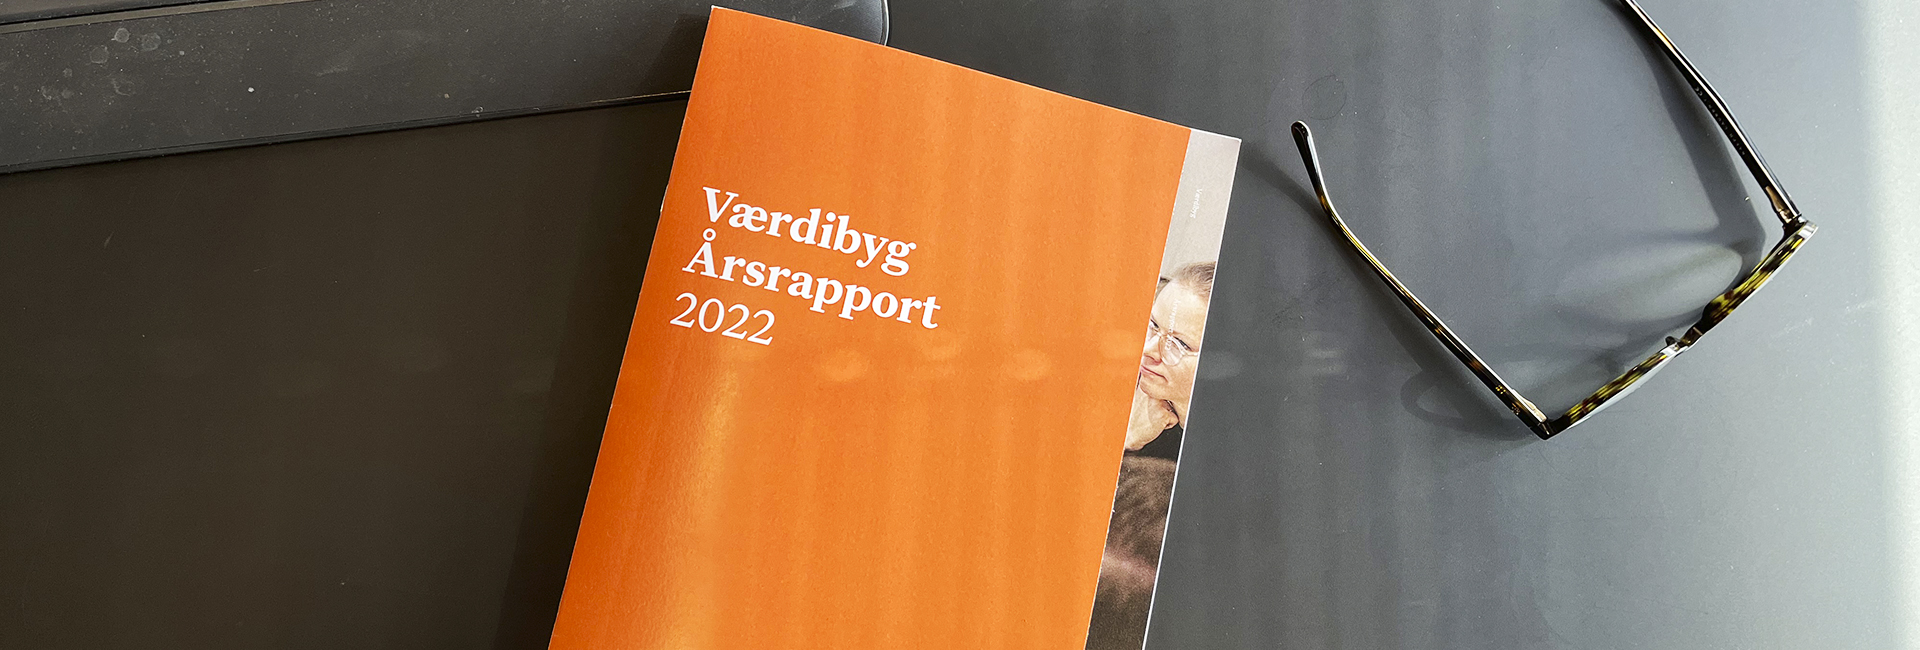 Værdibyg_Årsrapport_2022_web